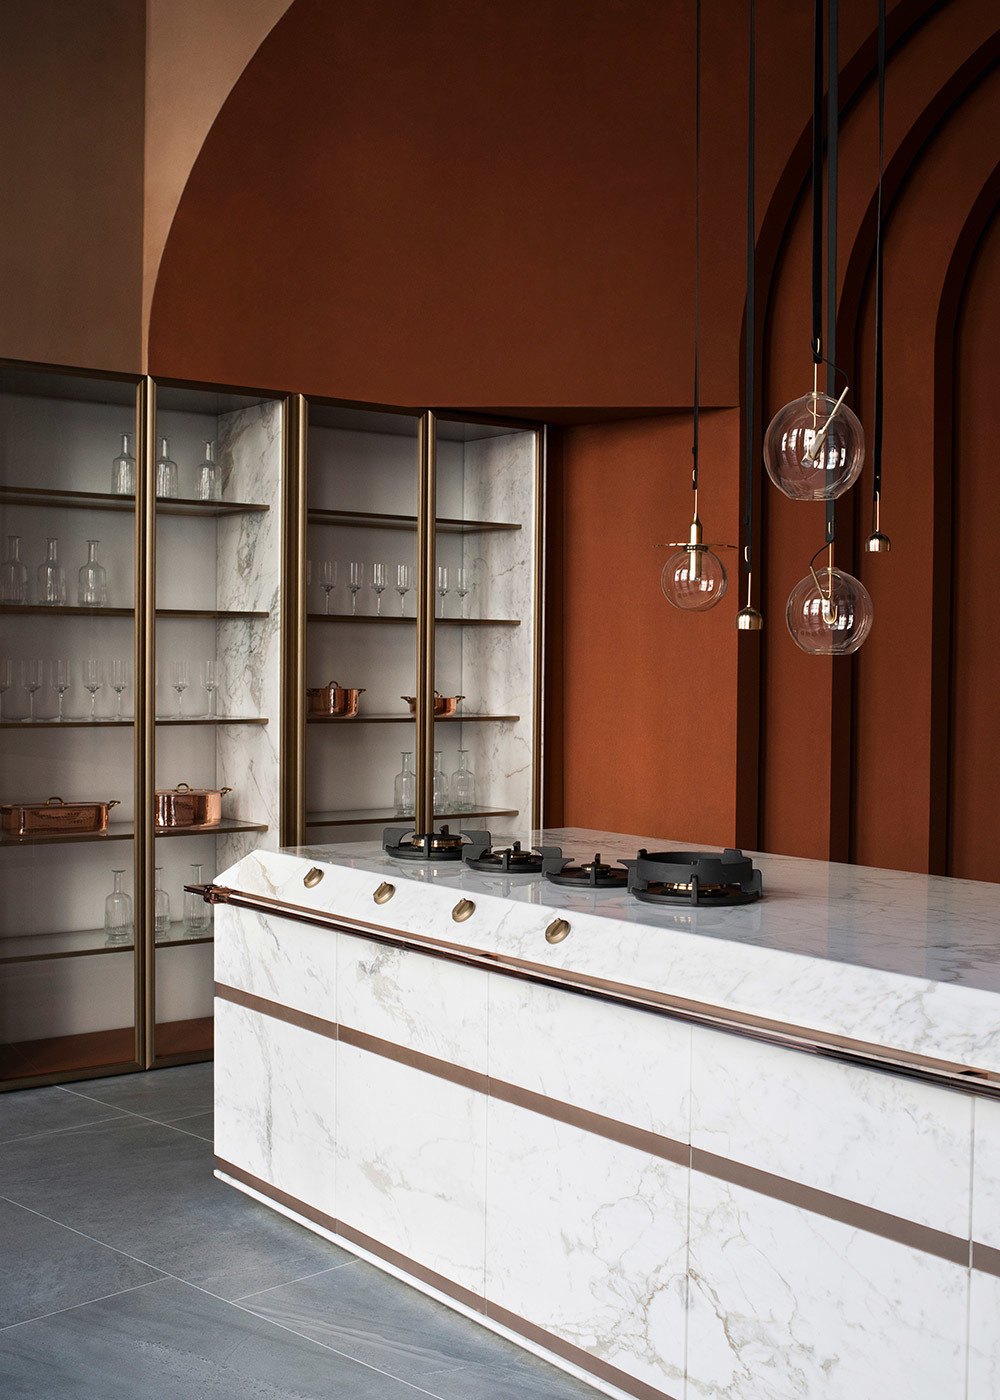 imagen 7 de Fendi diseña las cocinas más modernas y espectaculares.